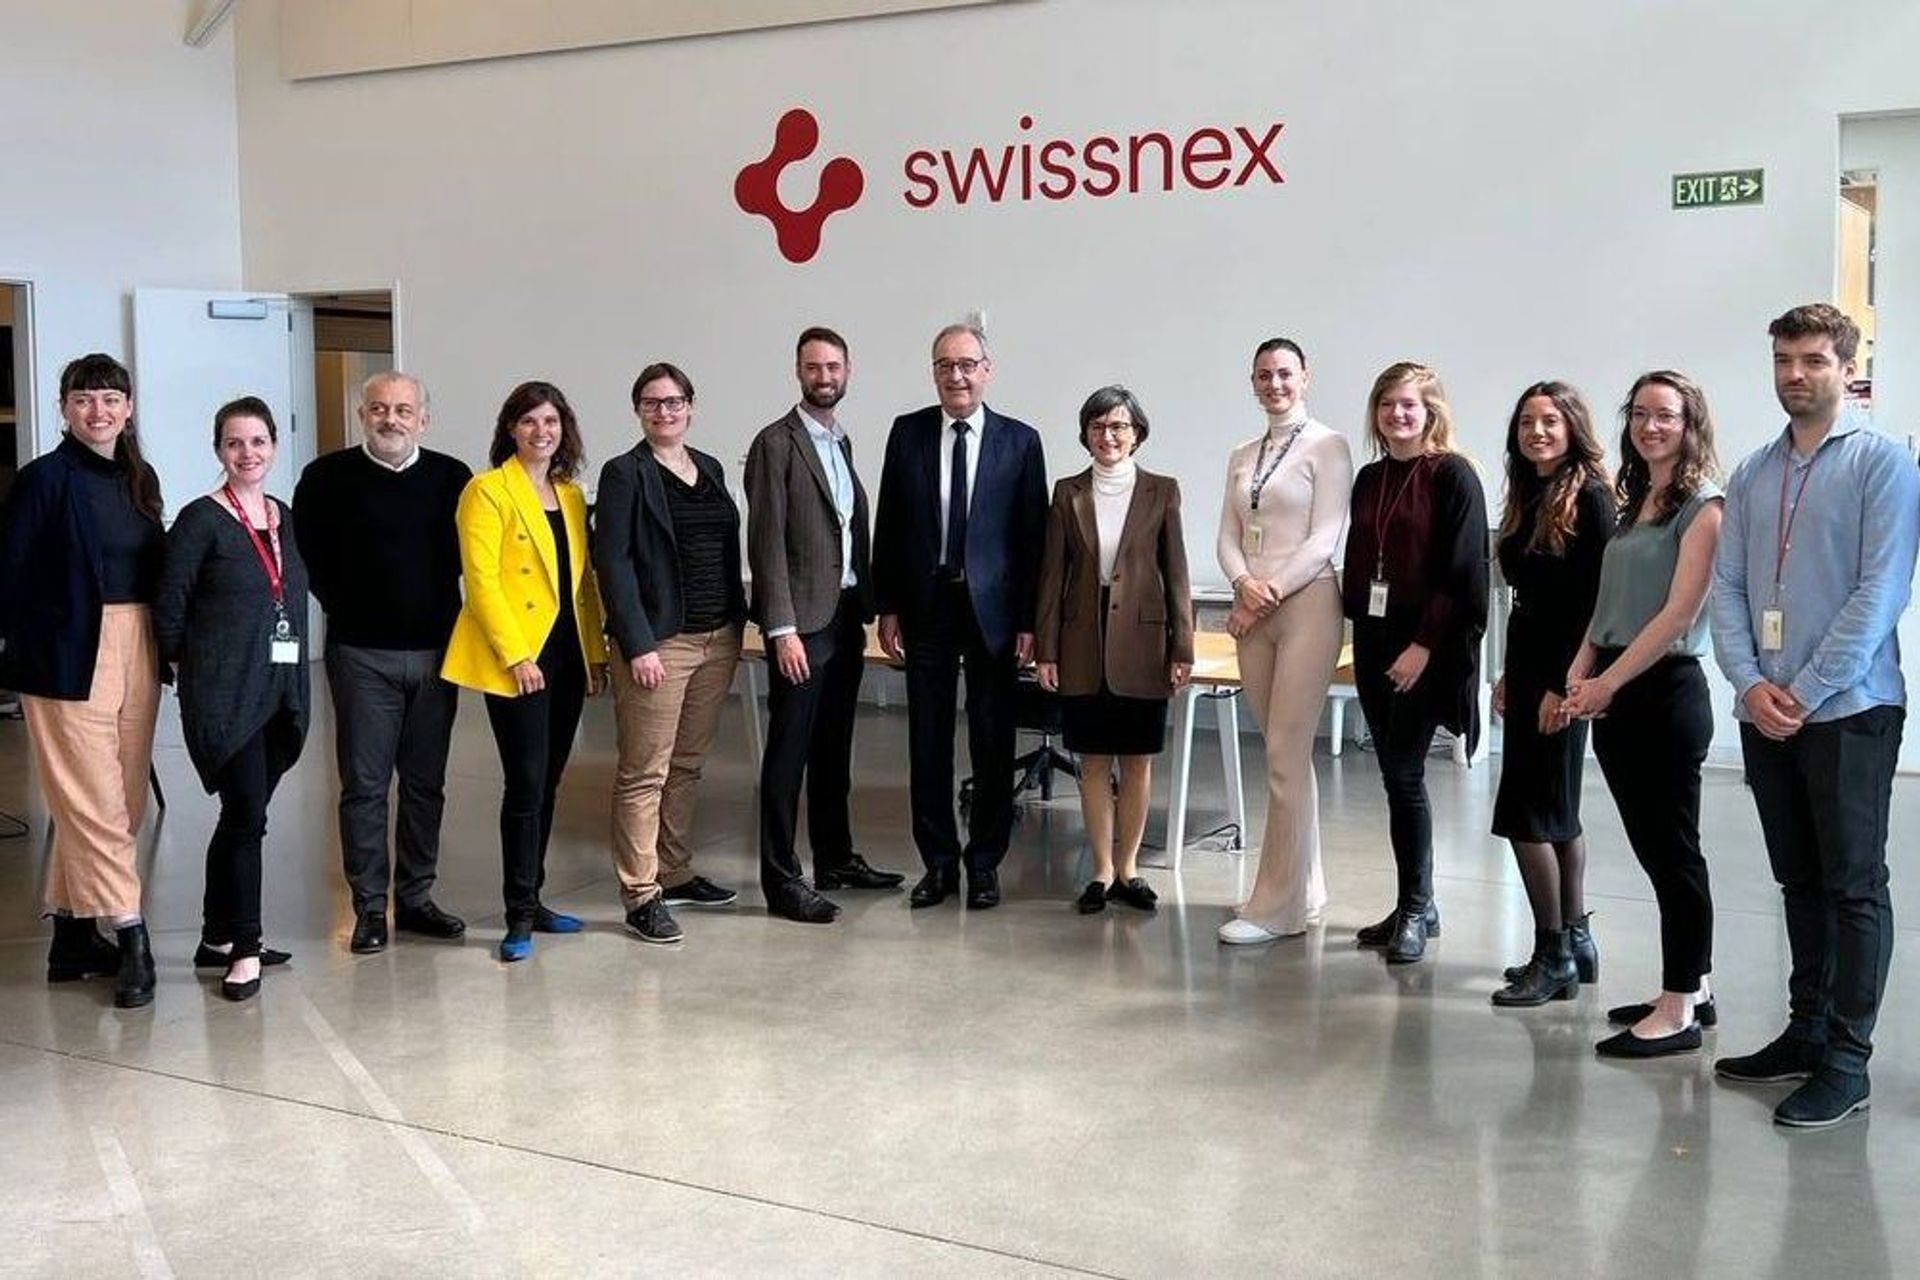 Un evento di networking organizzato da Swissnex alla presenza del Consigliere Federale Guy Parmelin